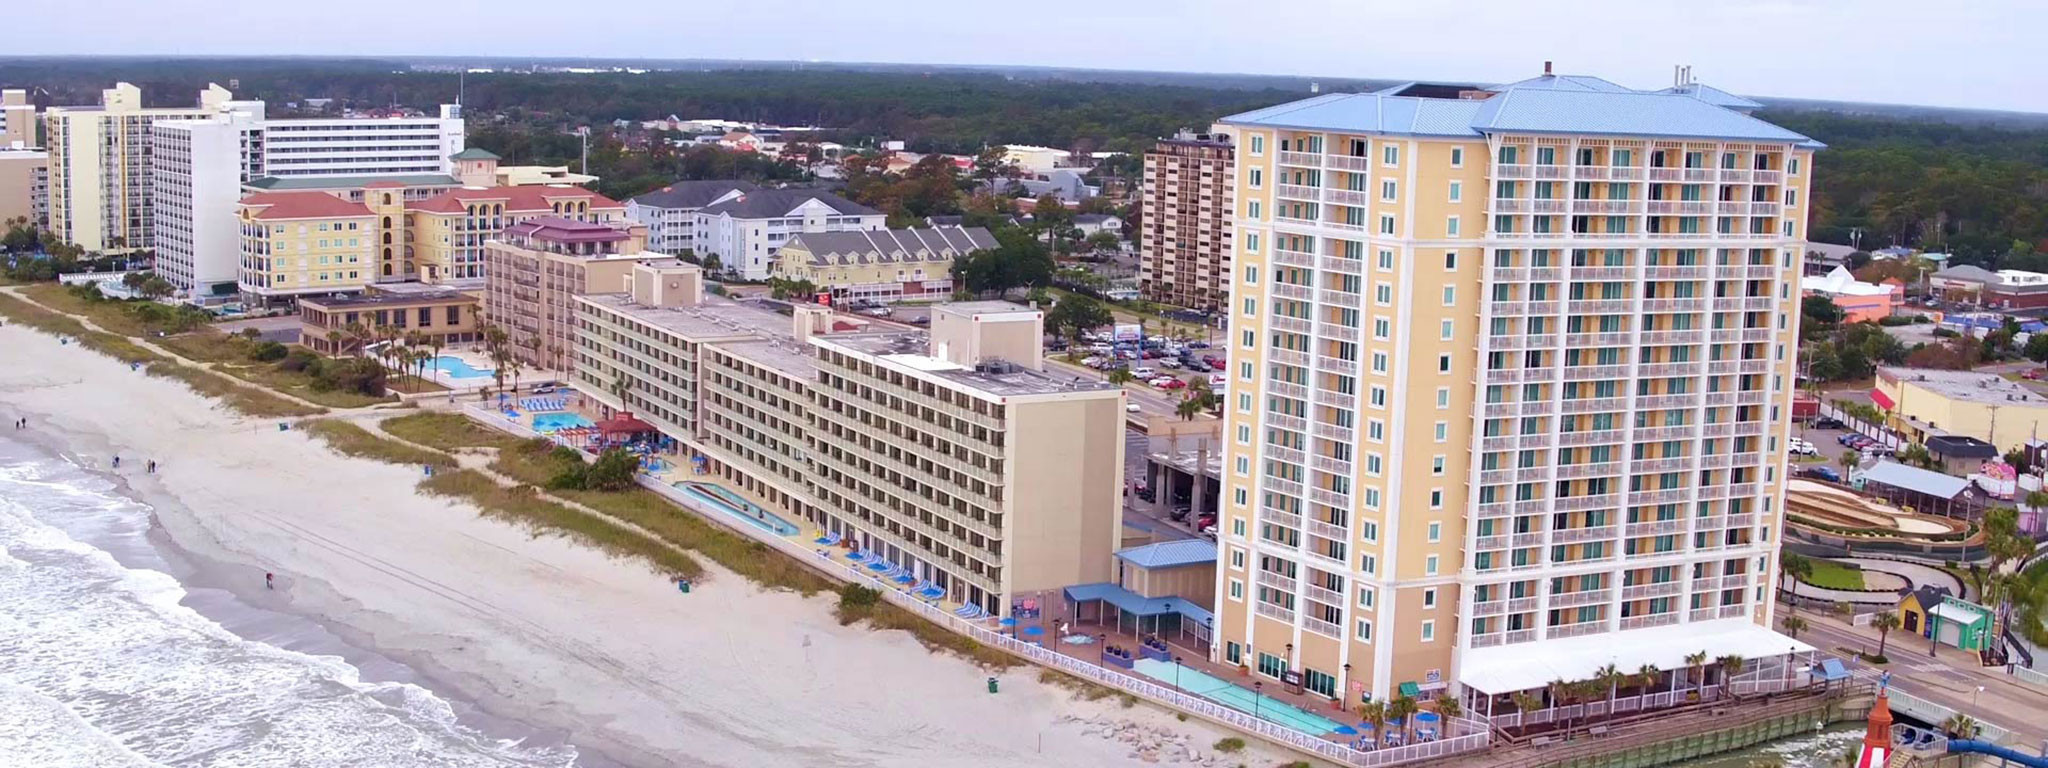 Westgate Myrtle Beach Oceanfront Resort Resorts In Myrtle